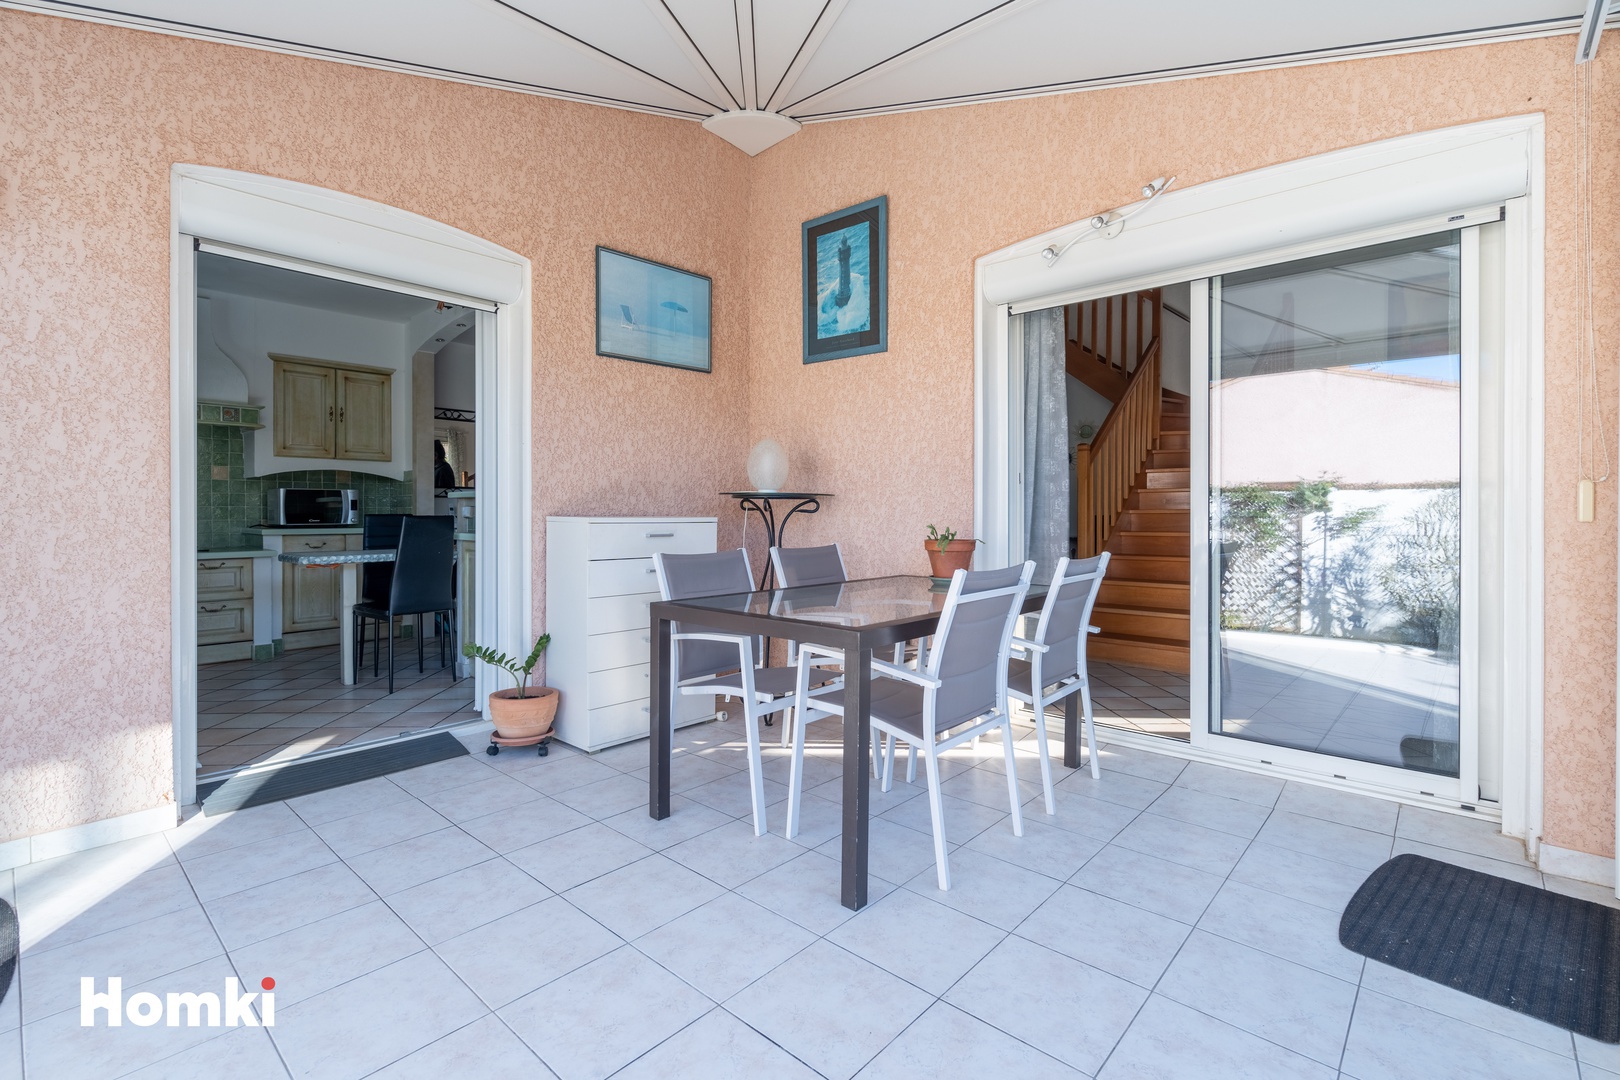 Homki - Vente Maison/villa  de 130.0 m² à Agde 34300